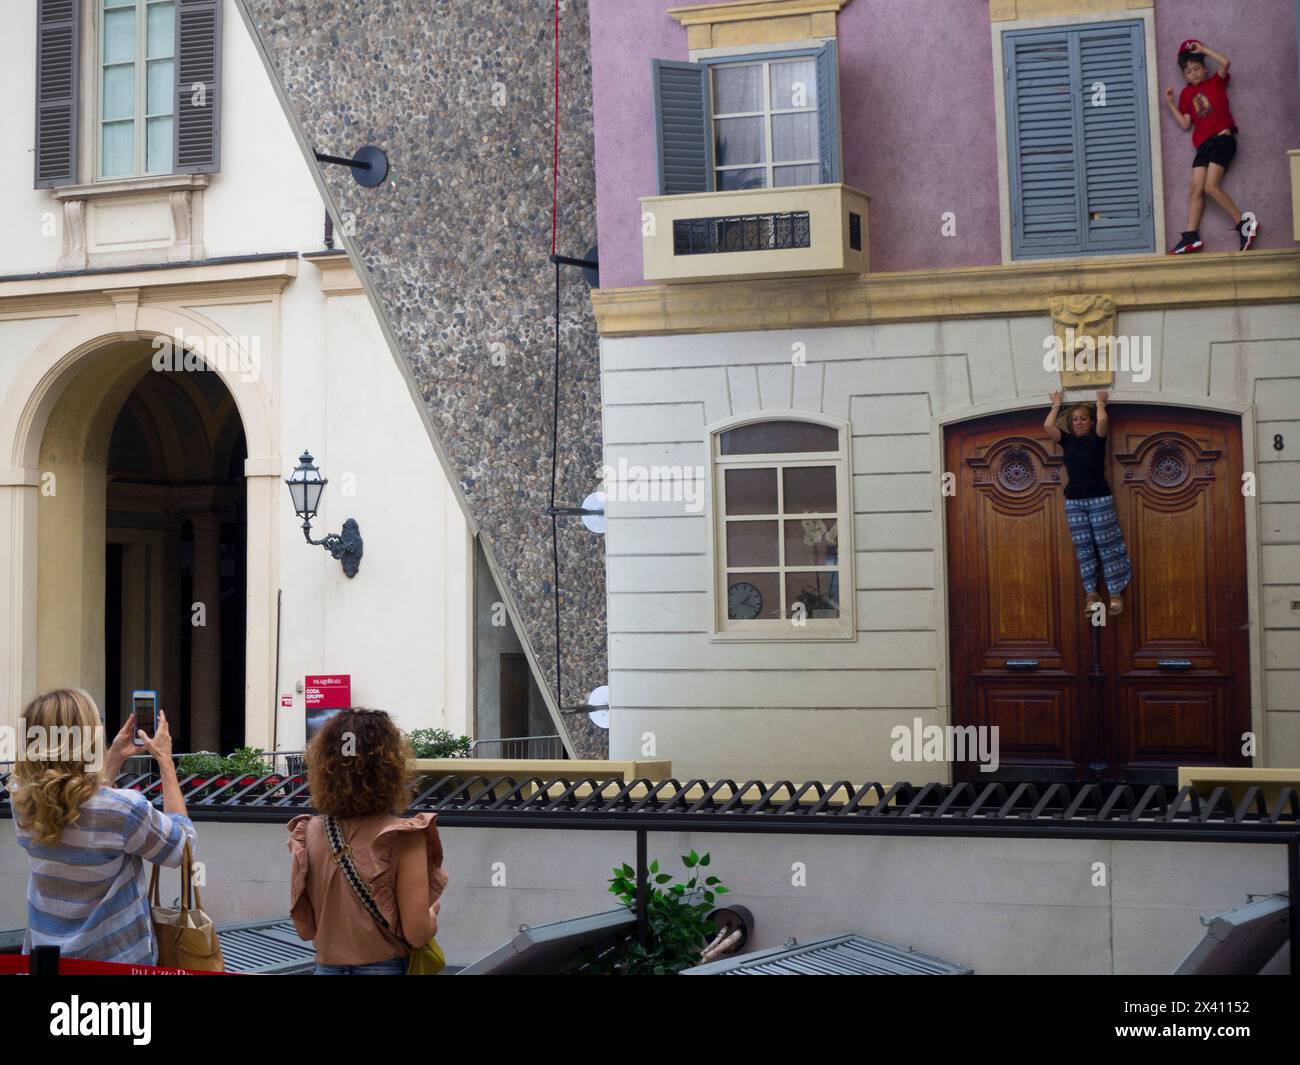 Riesiger Spiegel, der die Fassade des Gebäudes reflektiert, Kunstinstallation des argentinischen Künstlers Leandro Erlich vor dem Palazzo reale, Mailand, Italien Stockfoto